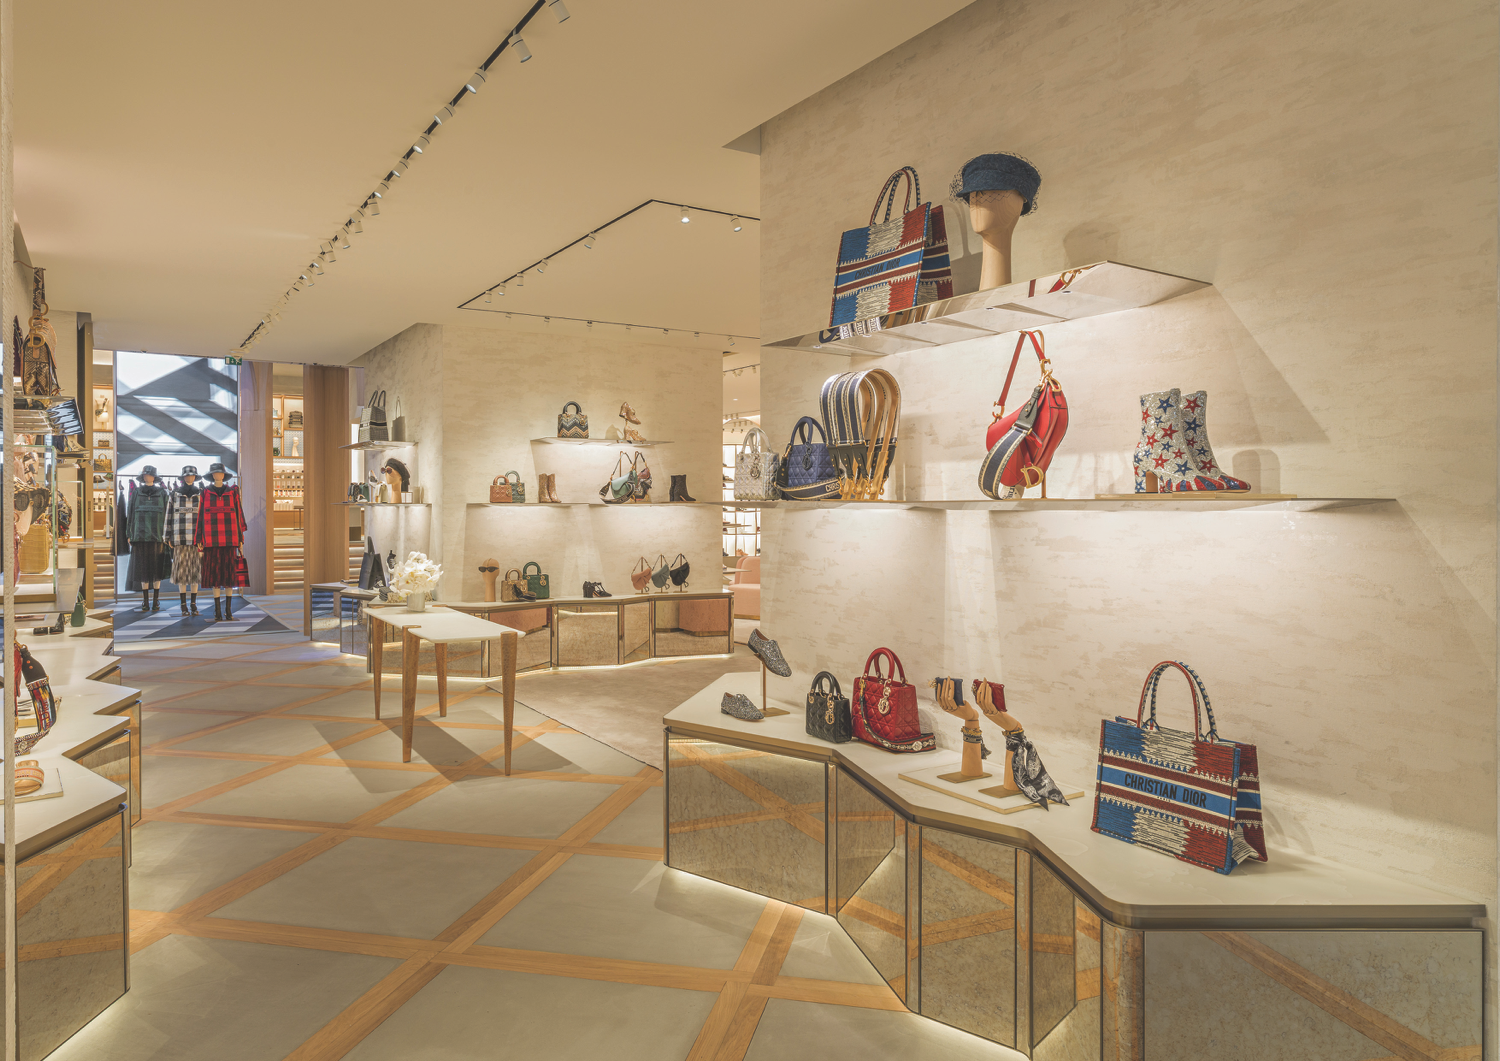 Step inside Dior's gigantic new Paris emporium